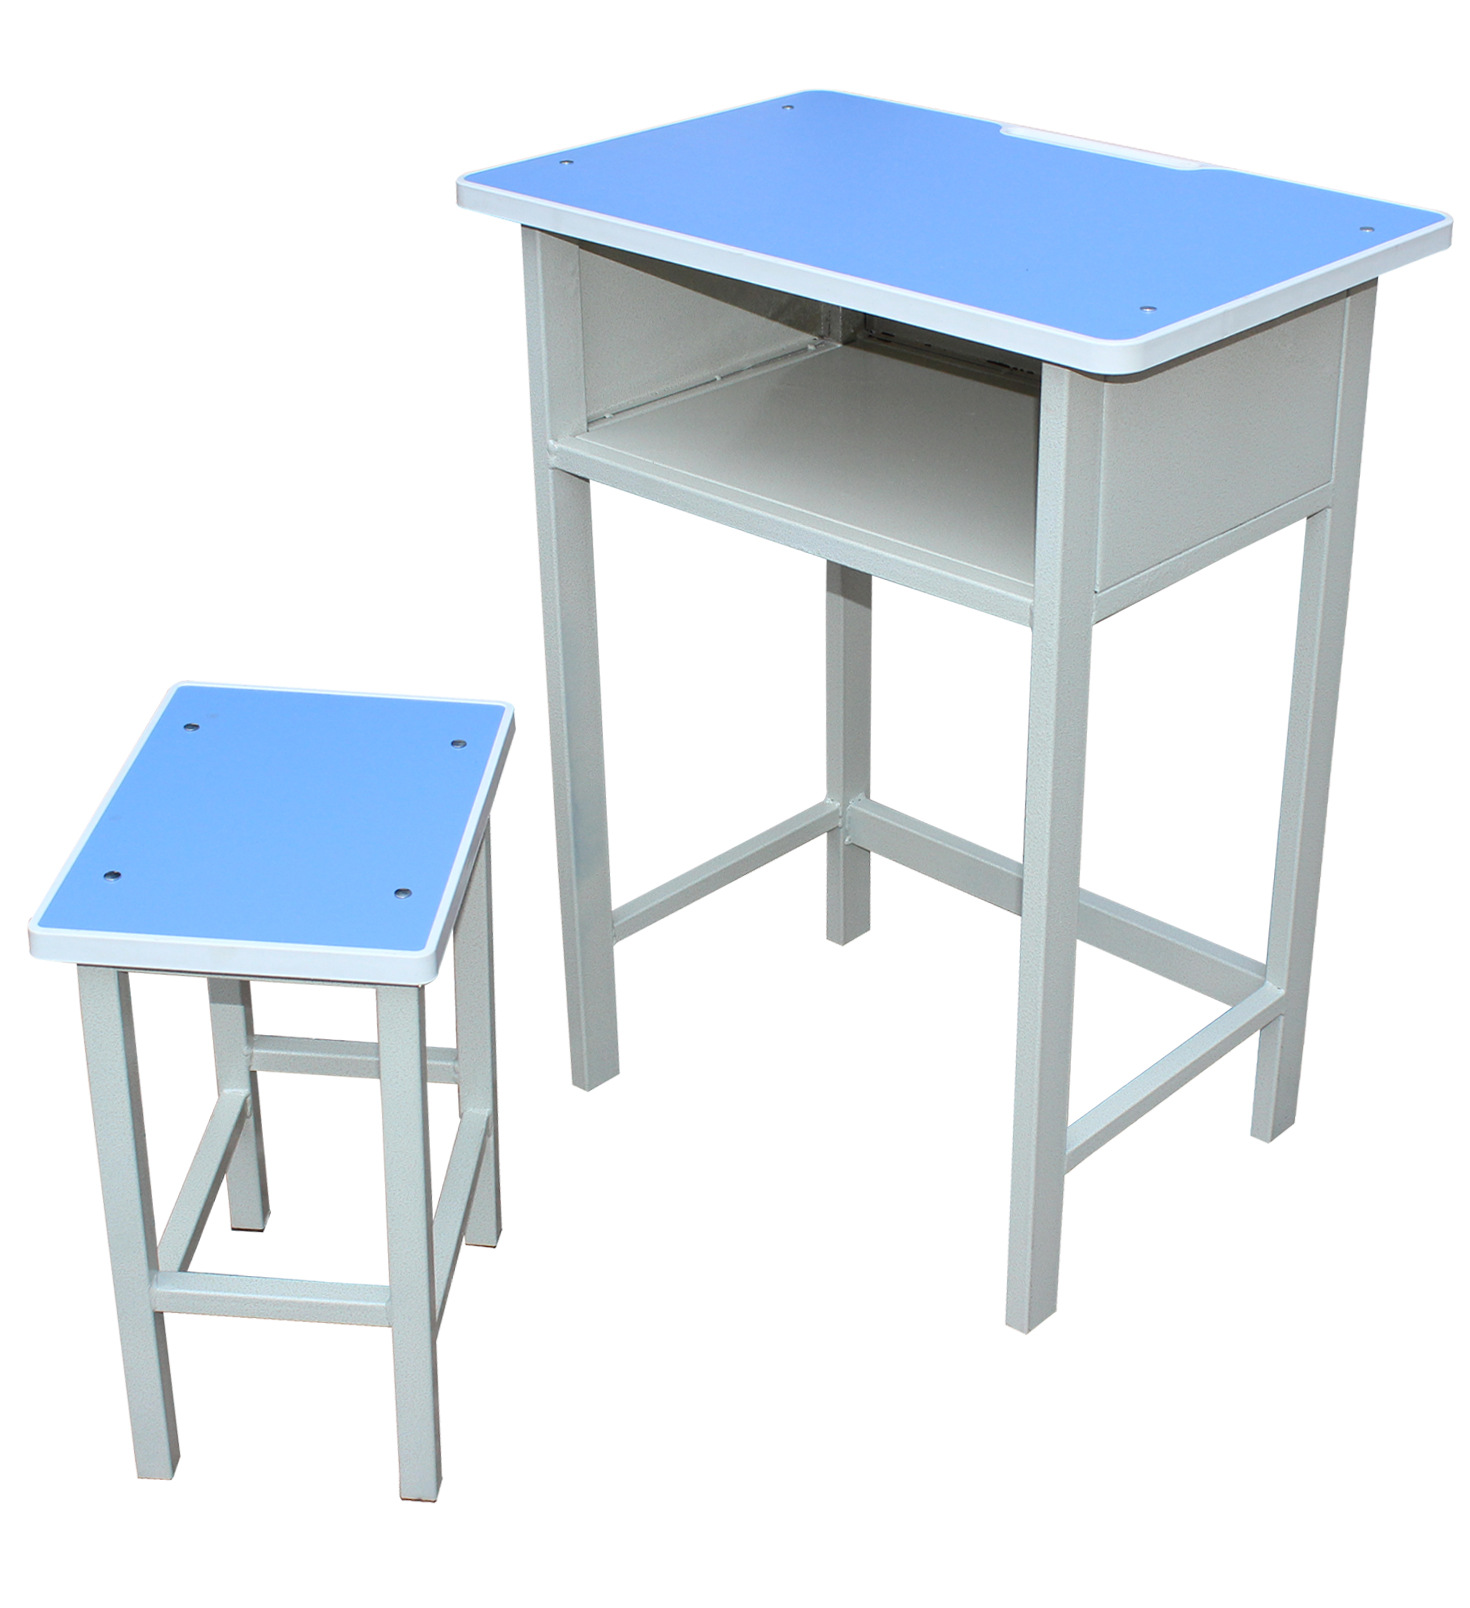 【专业生产批发学生课桌椅】k16型固定学生课桌椅,批发精品桌椅